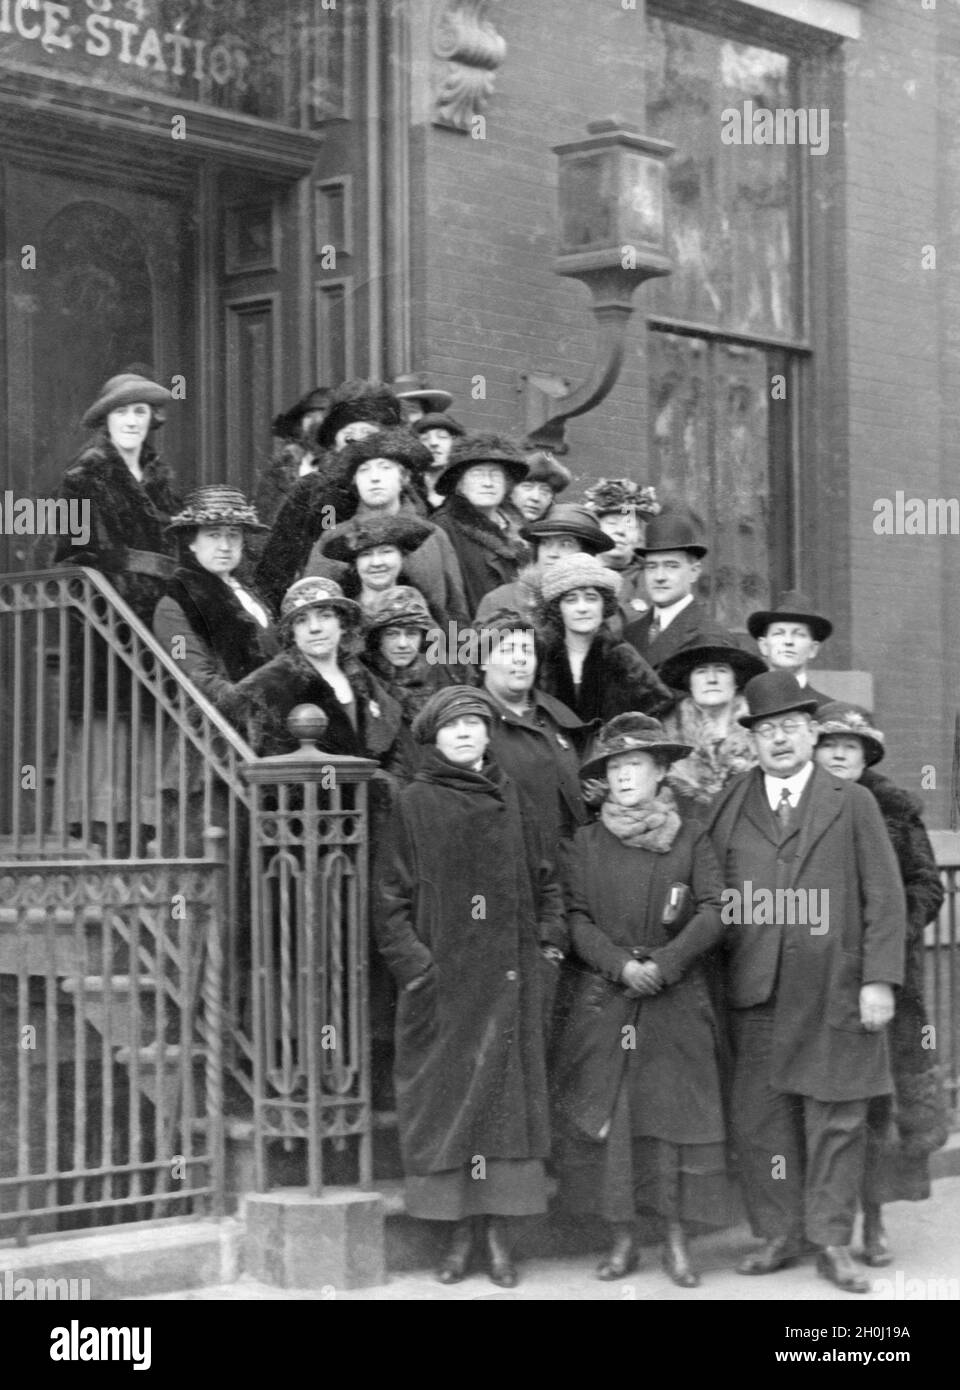 'Gruppenfoto der ''Women's Police'', die 1924 in New York City gegründet wurde: Diese besondere Schutztruppe soll die Passantinnen vor Angriffen auf die Straßen von New York schützen. [Automatisierte Übersetzung]' Stockfoto